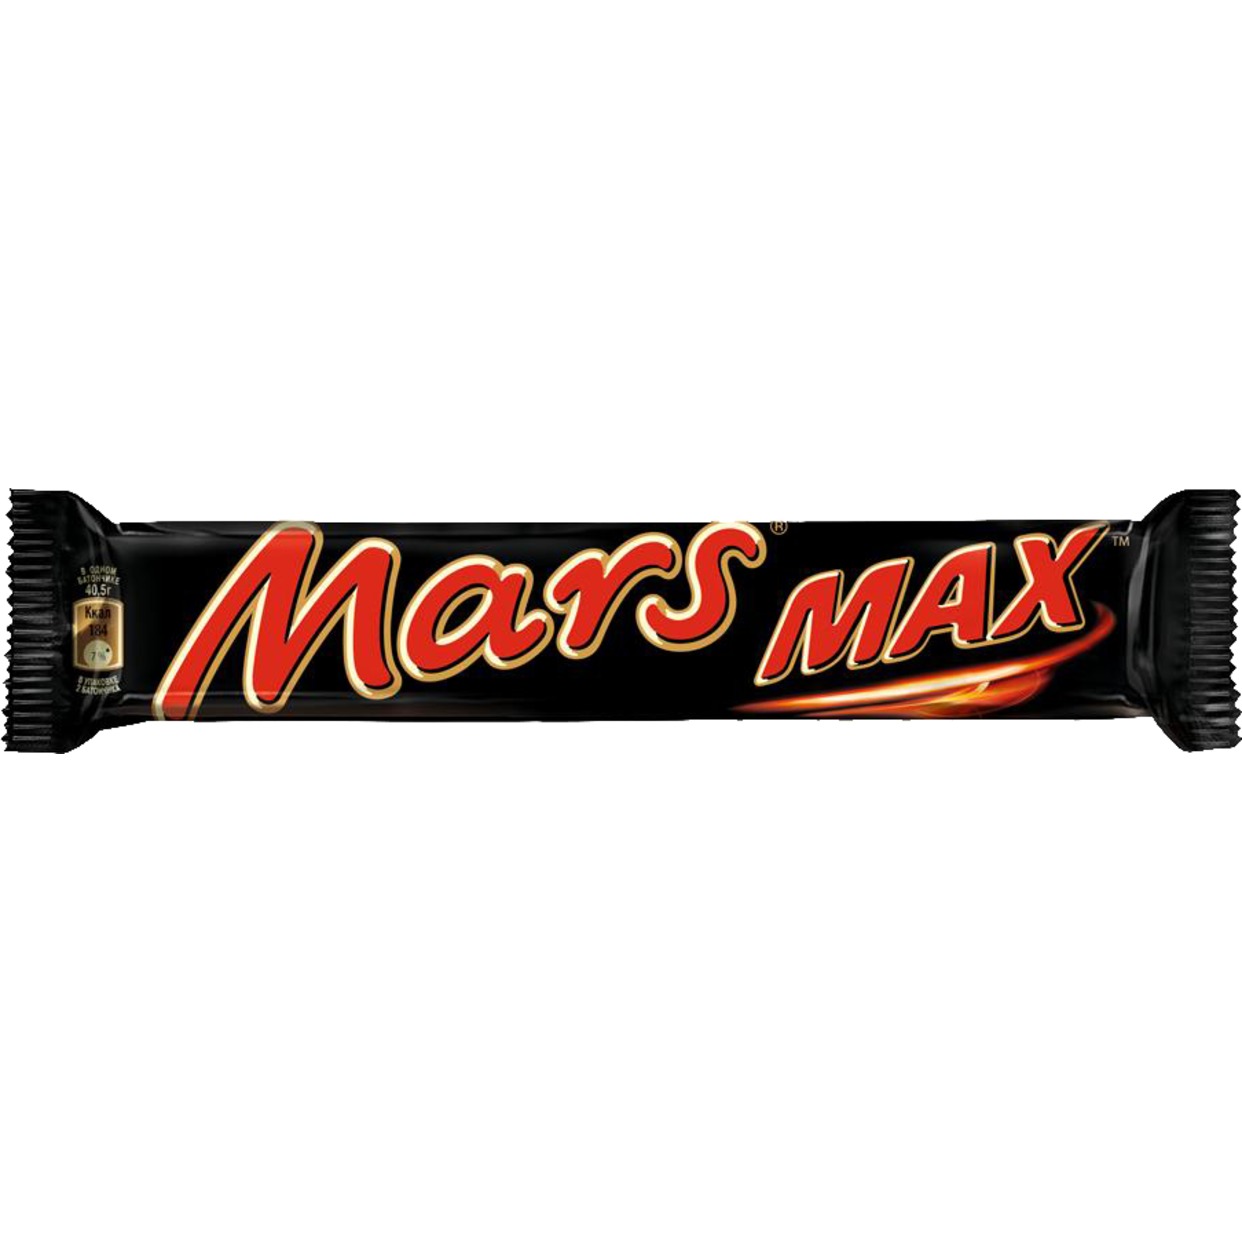 Шоколадный батончик, Mars Max, 81 г по акции в Пятерочке